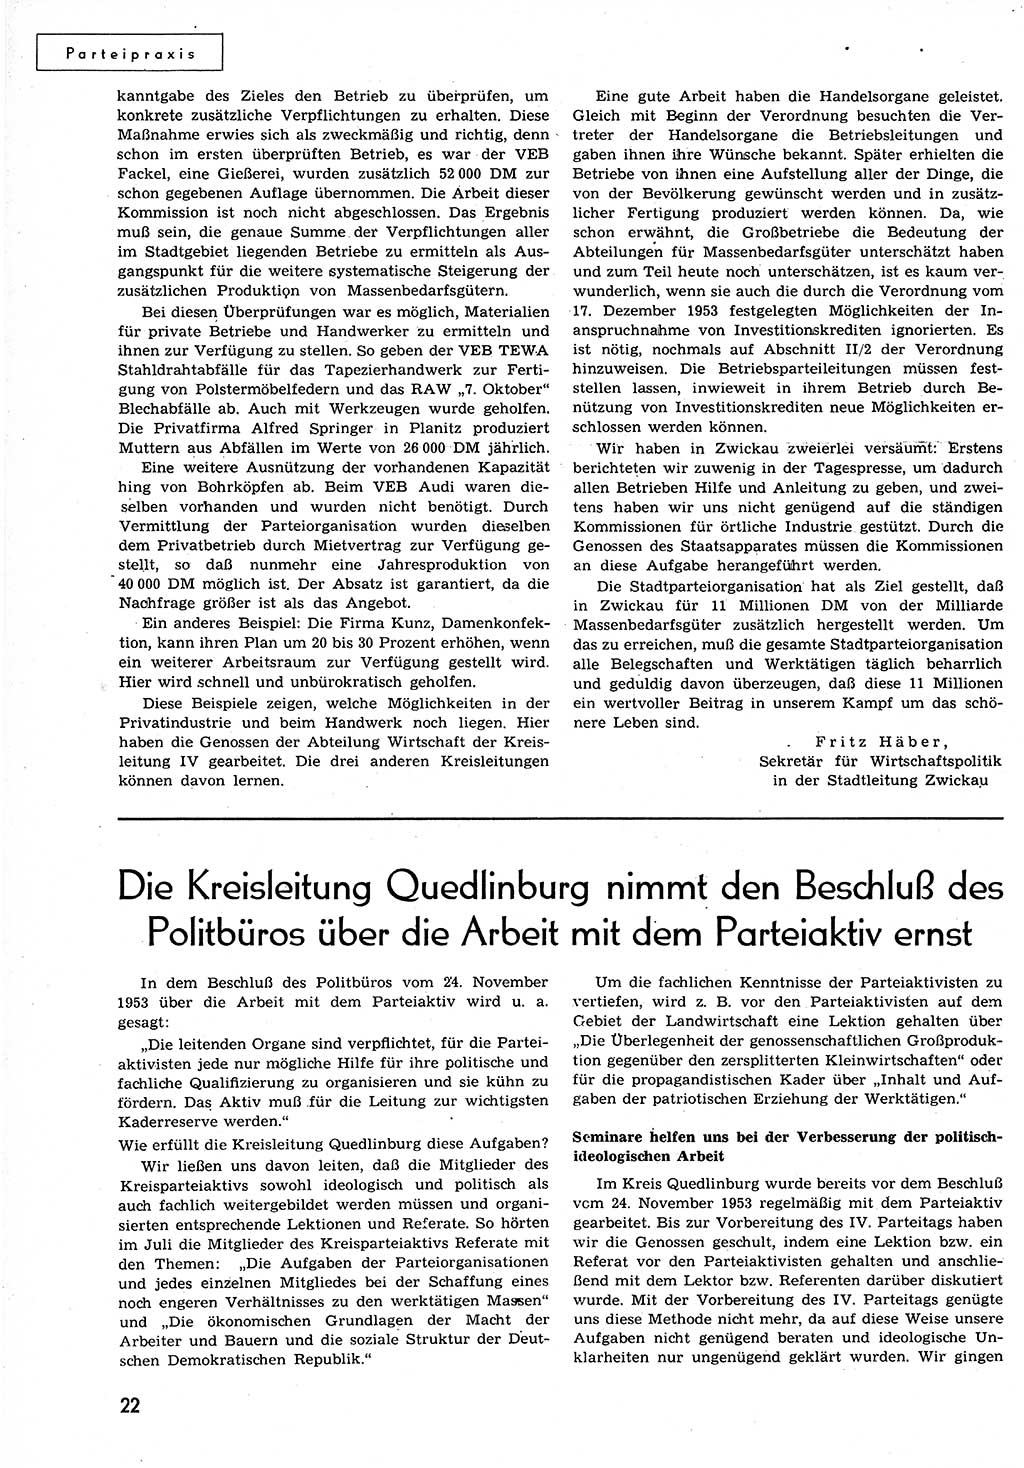 Neuer Weg (NW), Organ des Zentralkomitees (ZK) der SED (Sozialistische Einheitspartei Deutschlands) für alle Parteiarbeiter, 9. Jahrgang [Deutsche Demokratische Republik (DDR)] 1954, Heft 15/22 (NW ZK SED DDR 1954, H. 15/22)